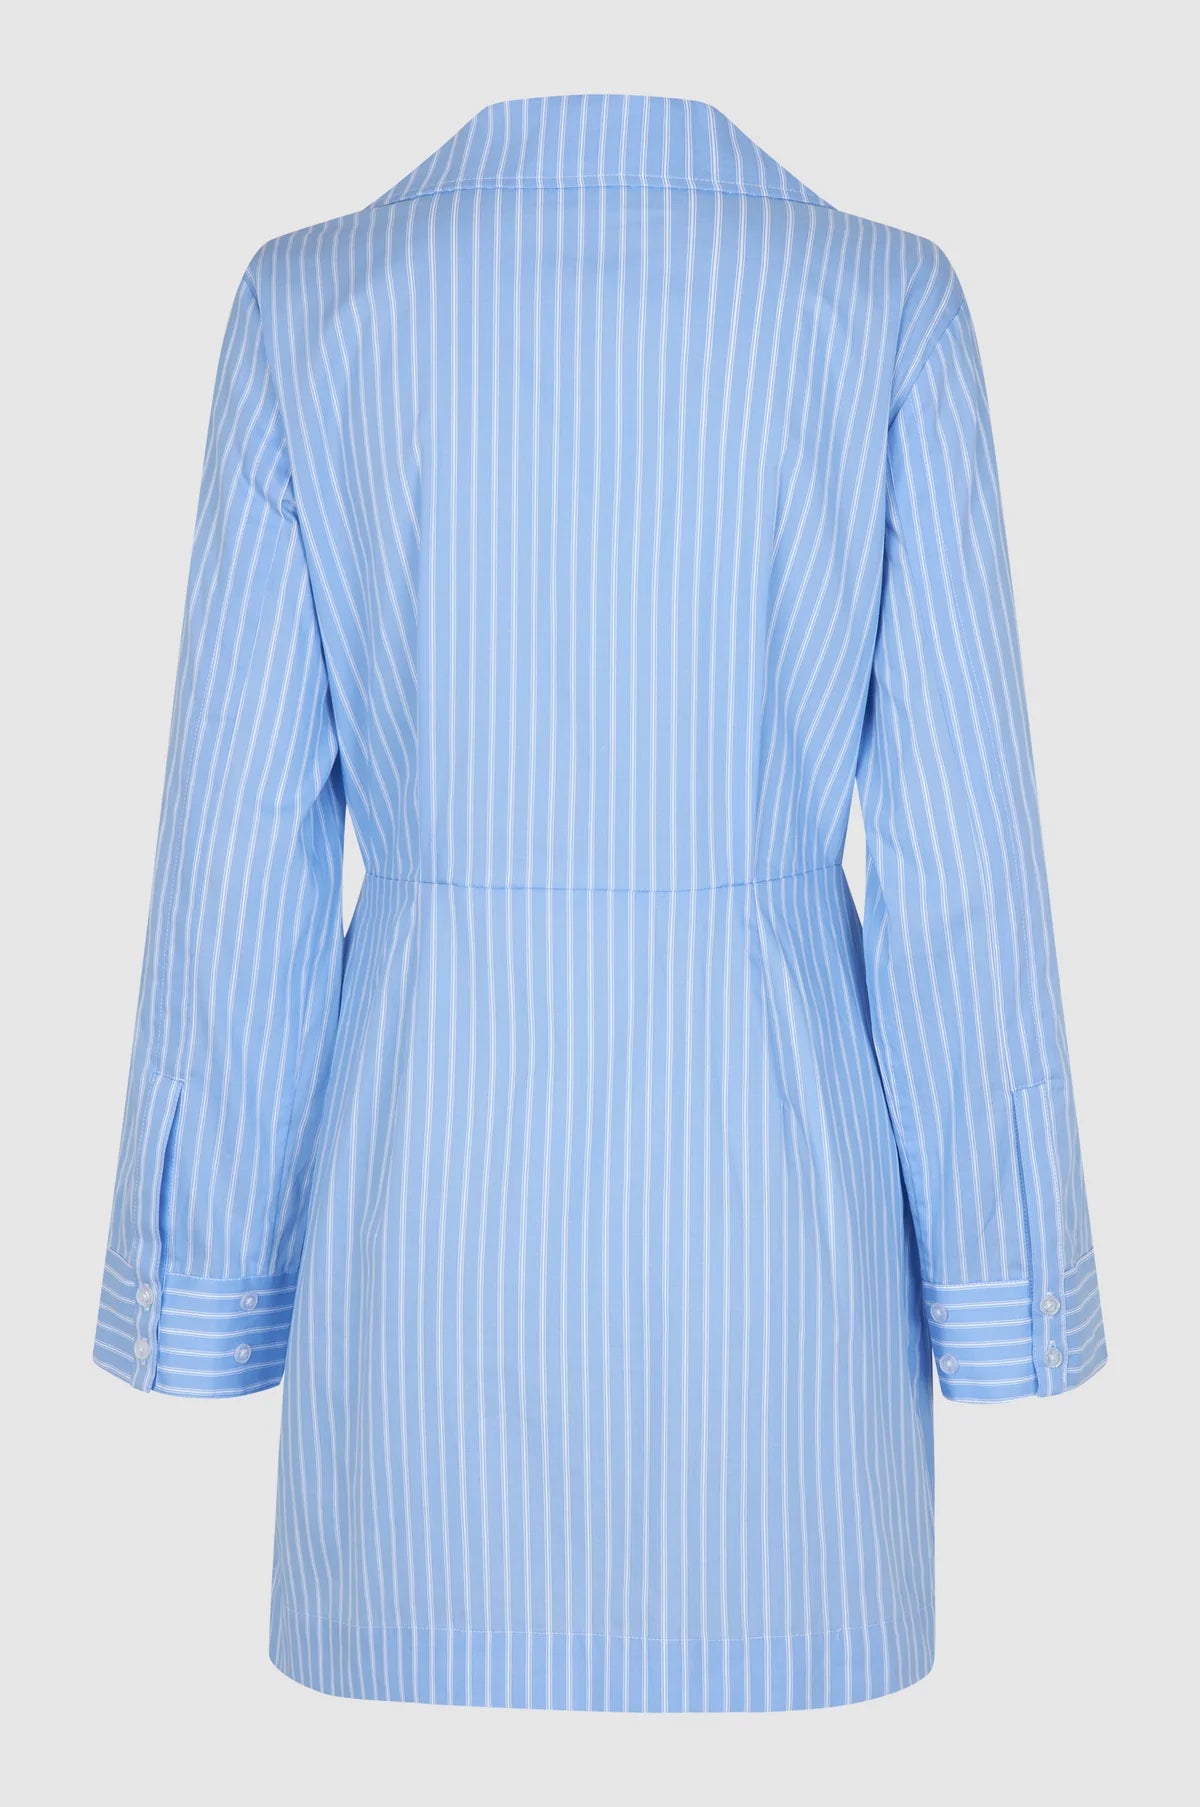 Amale Dress in Light Blue Stripe